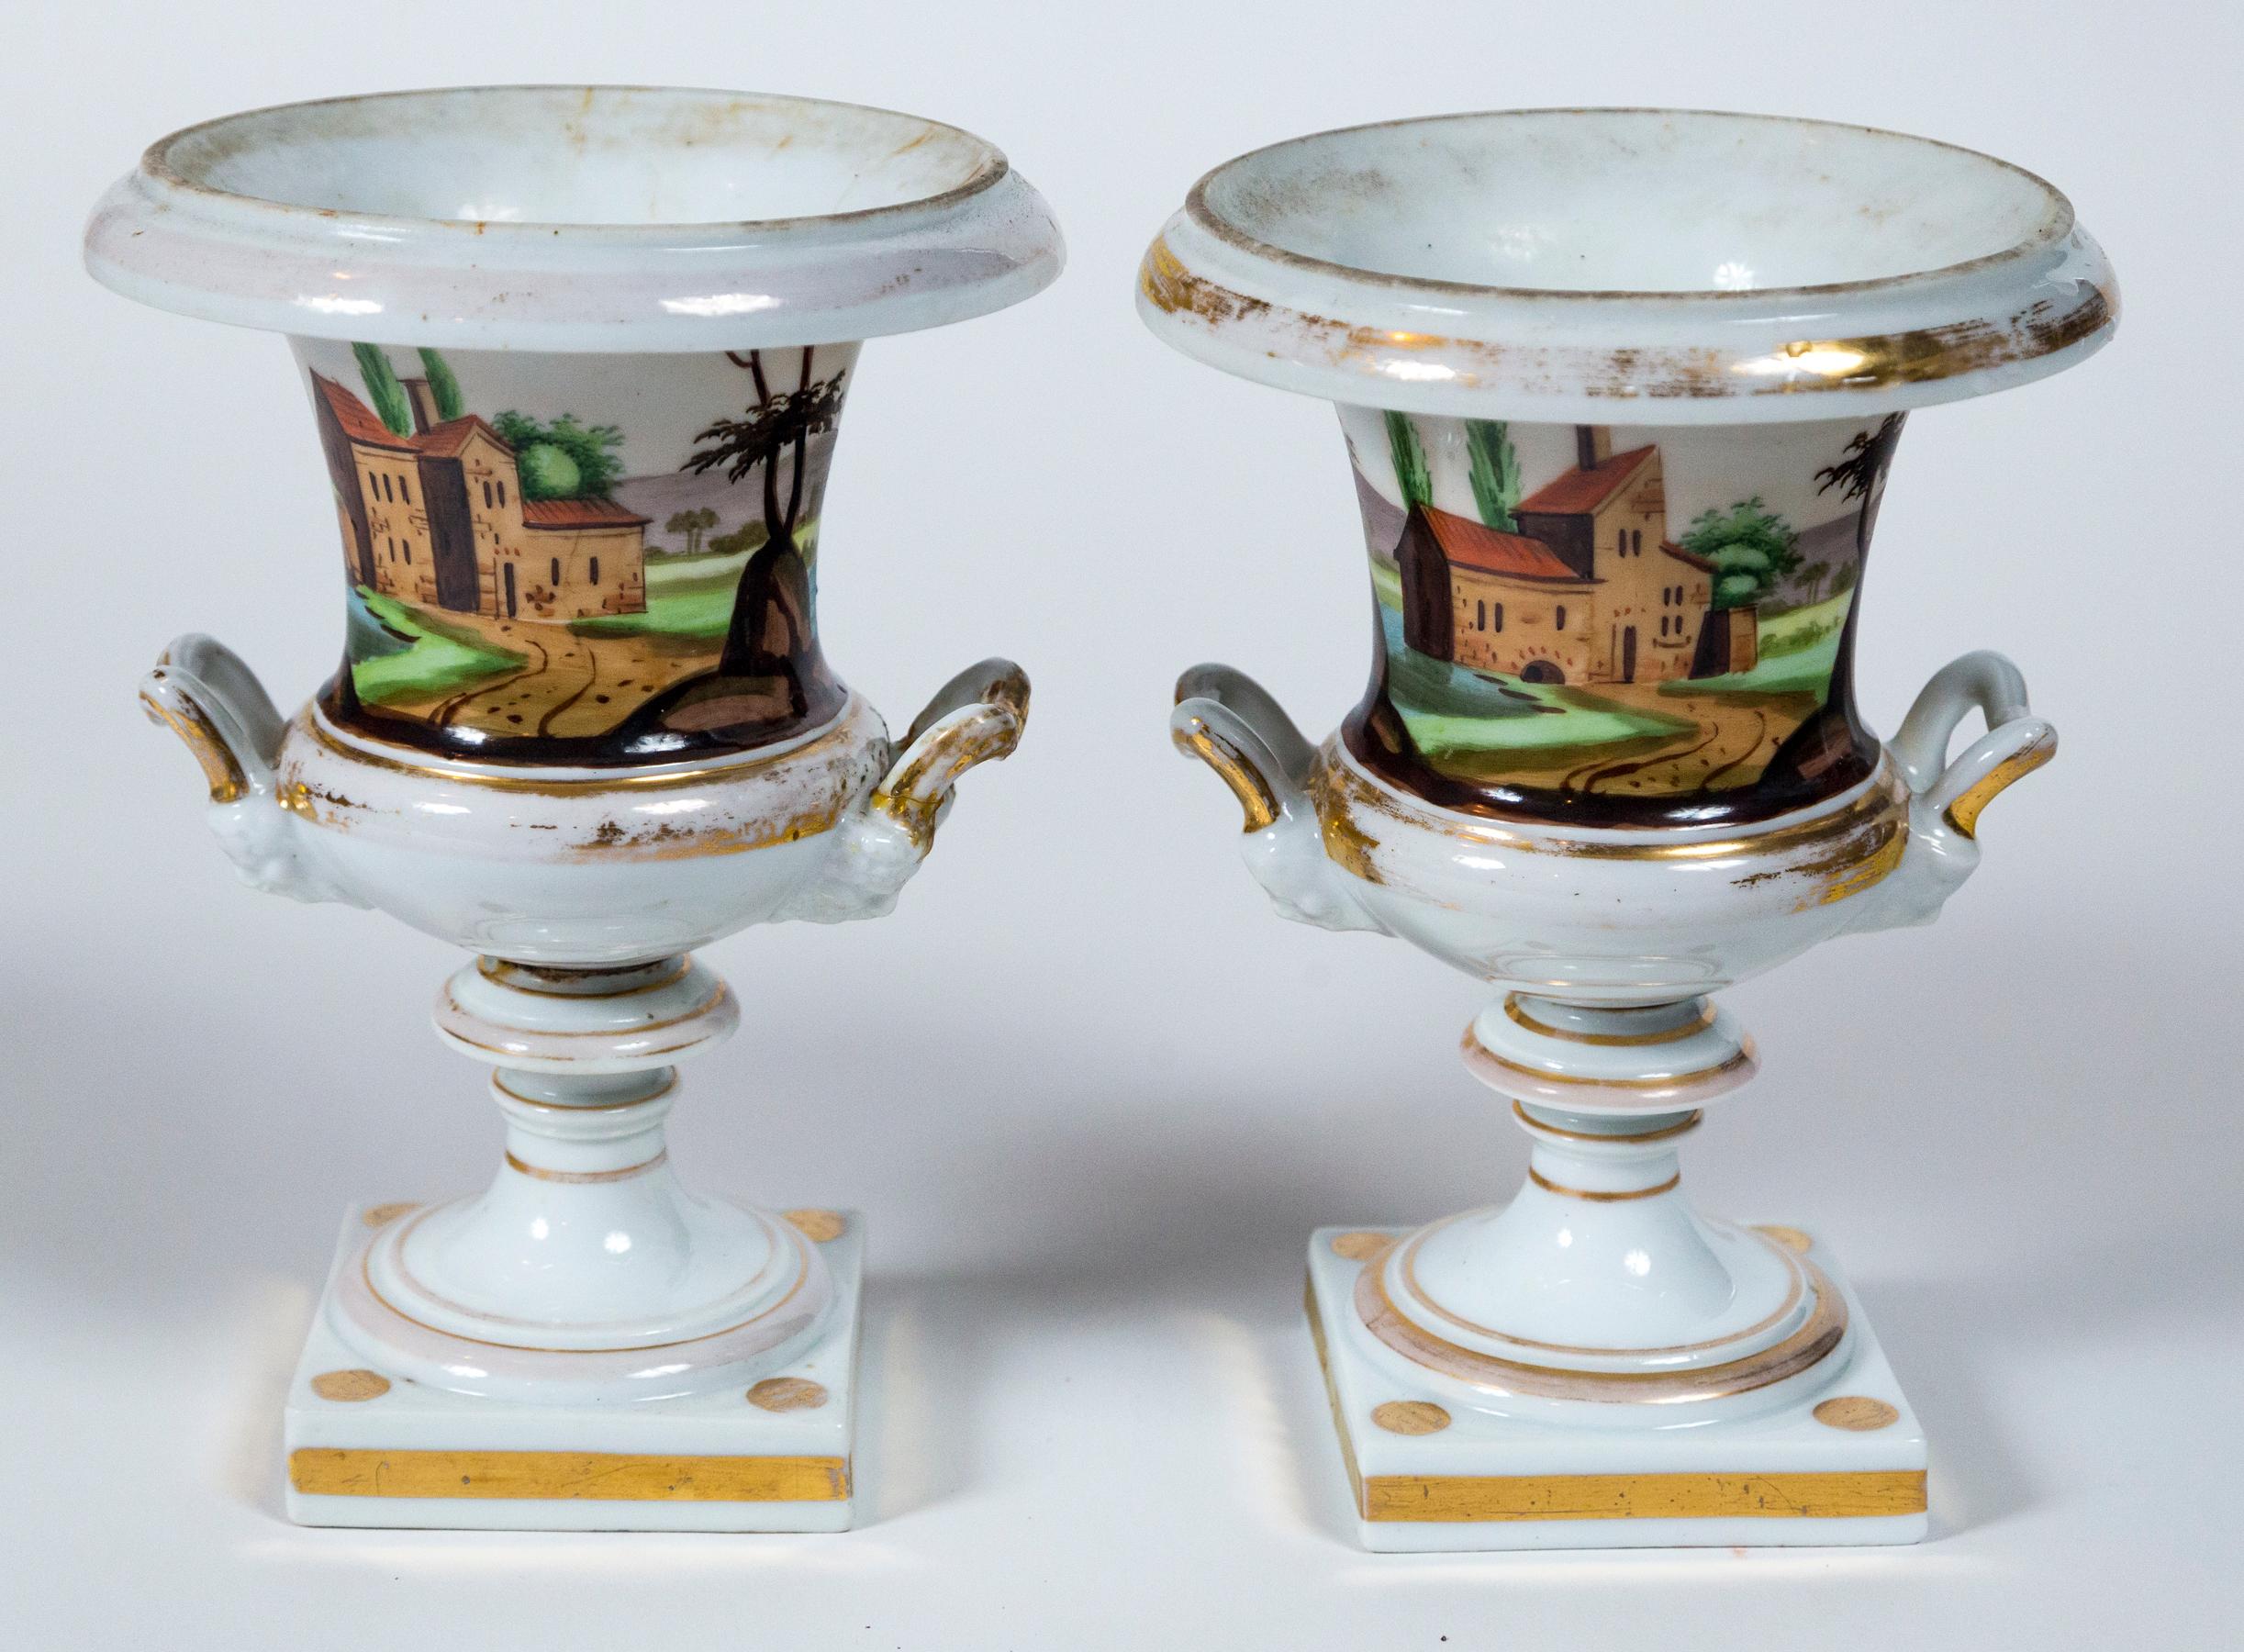 Paar Urnen aus altem Pariser Porzellan, Frankreich, 19. Jahrhundert. Handbemalte Urnen in klassischer Form. Eine andere Landschaftsszene auf jeder Urne. Wunderschöne Farben mit Goldverzierung.